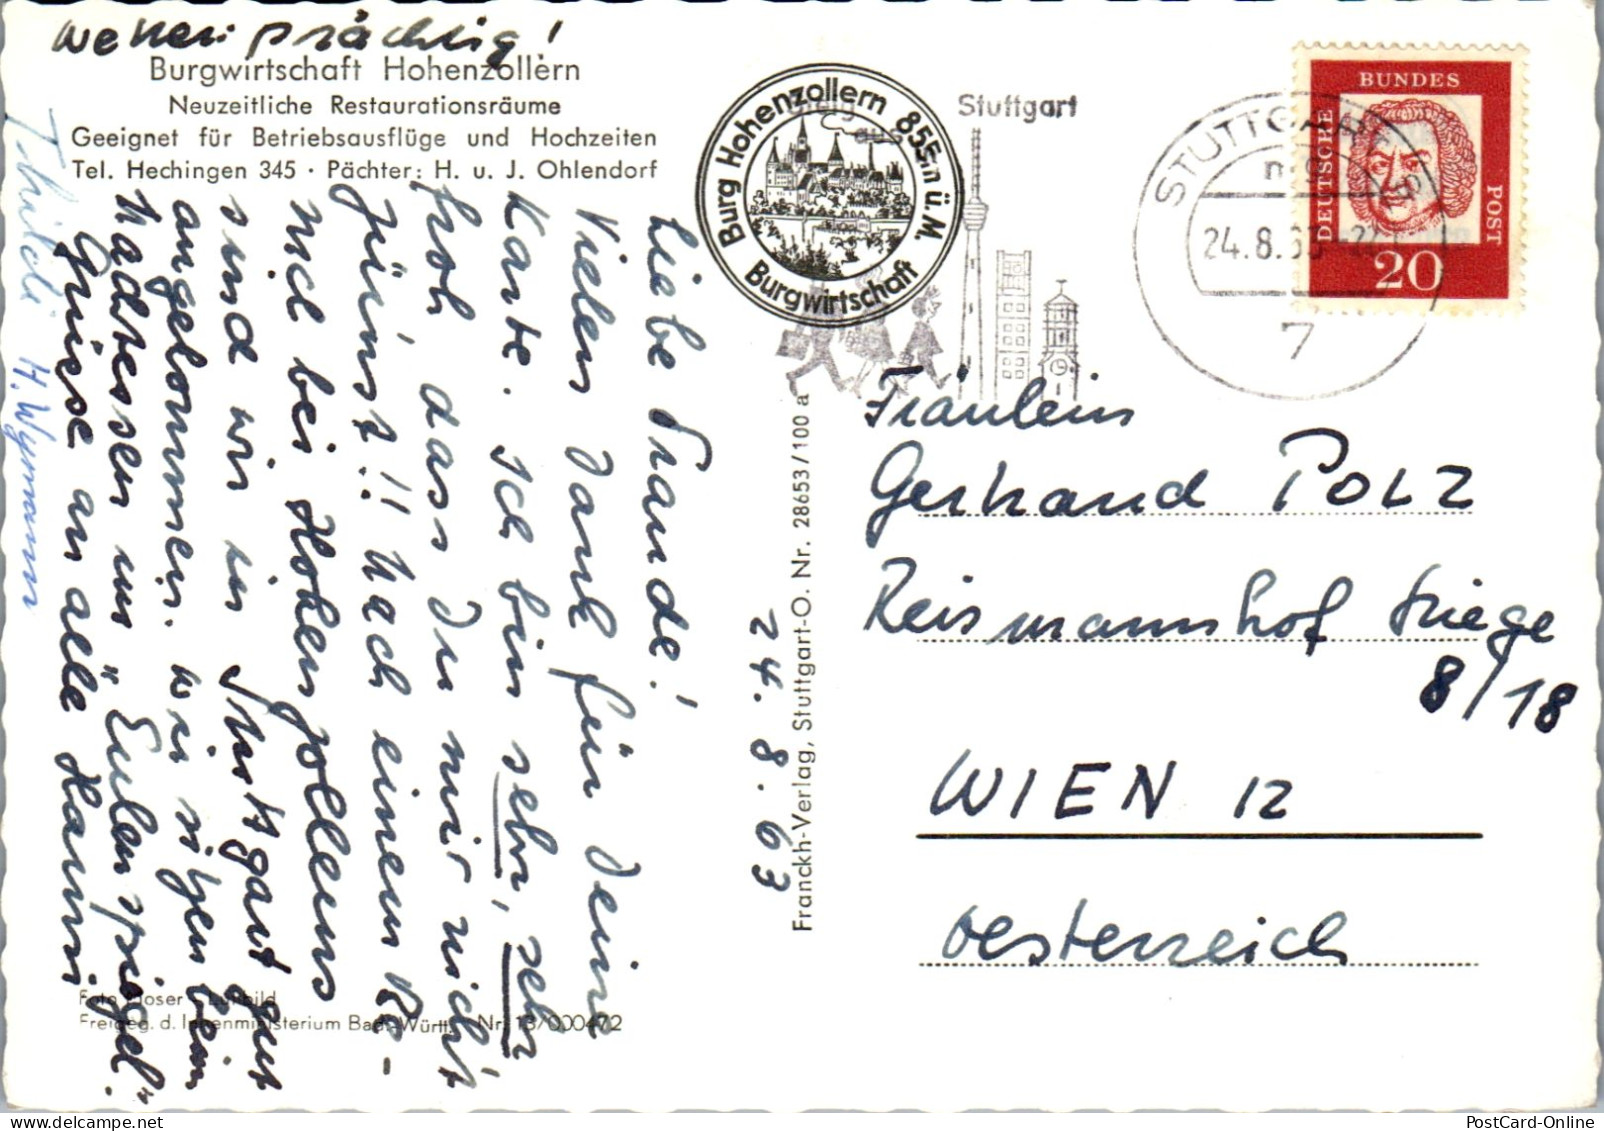 51532 - Deutschland - Burg Hohenzollern , Burgwirtschaft , H. U. J. Ohlendorf - Gelaufen 1963 - Hechingen